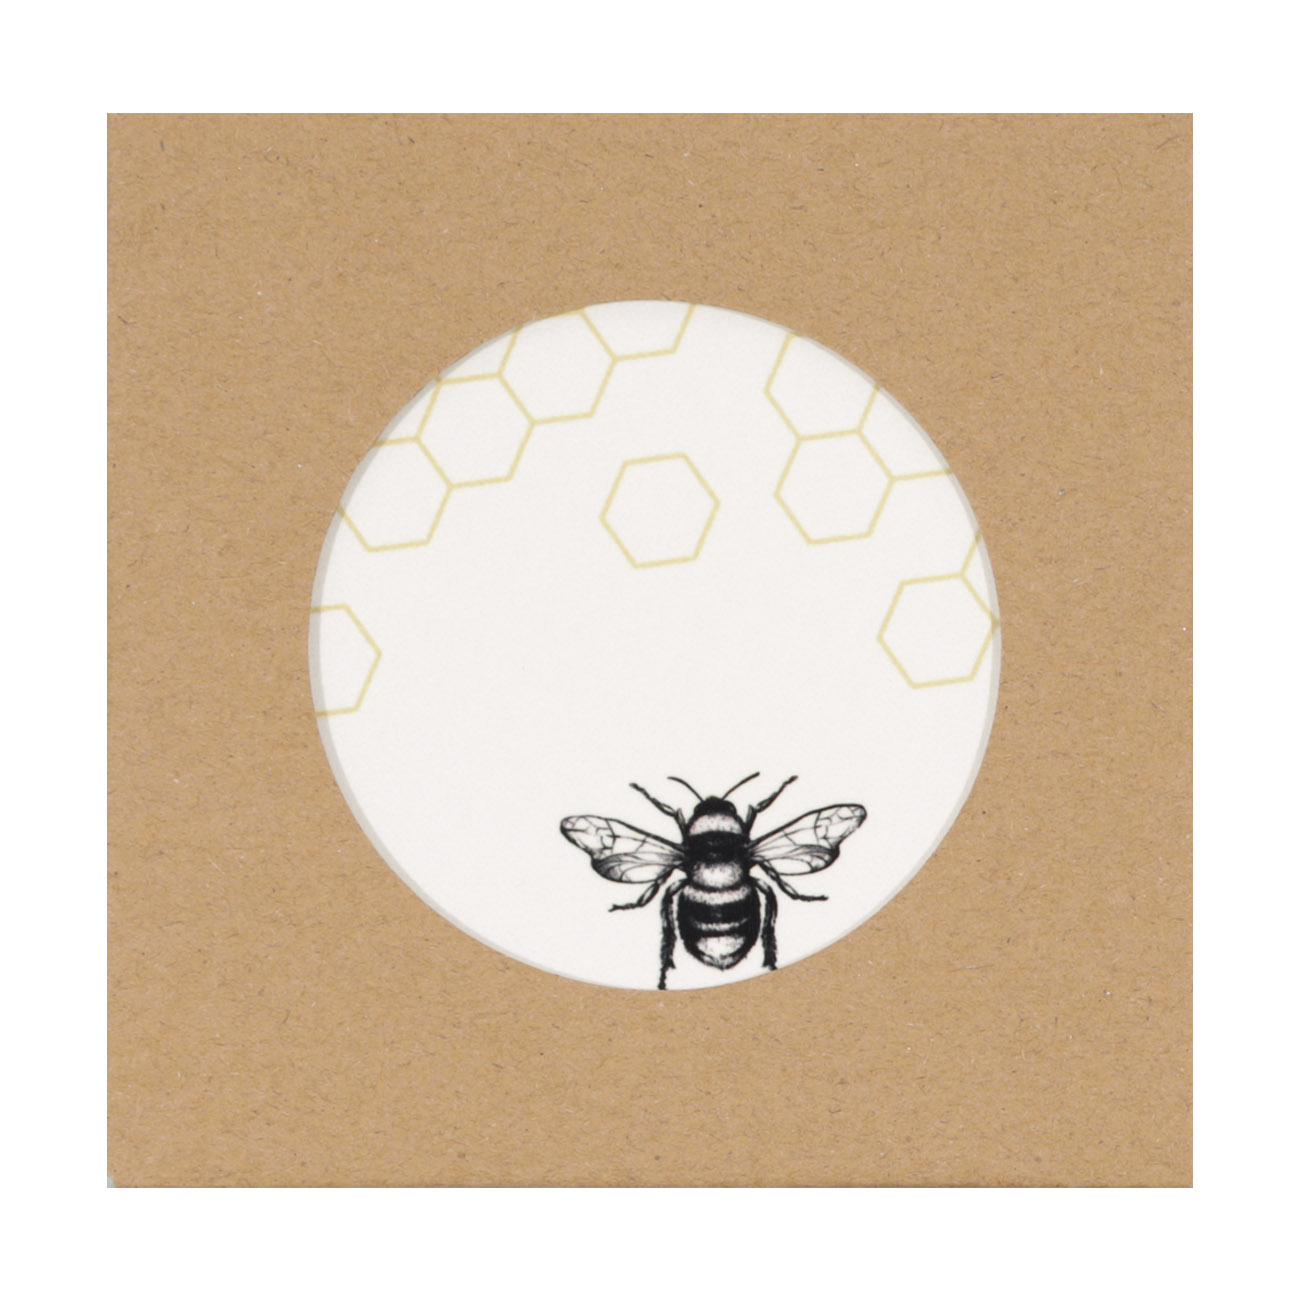 Подставка под горячее, 20 см, керамика/пробка, шестиугольная, Пчела, Honey изображение № 2